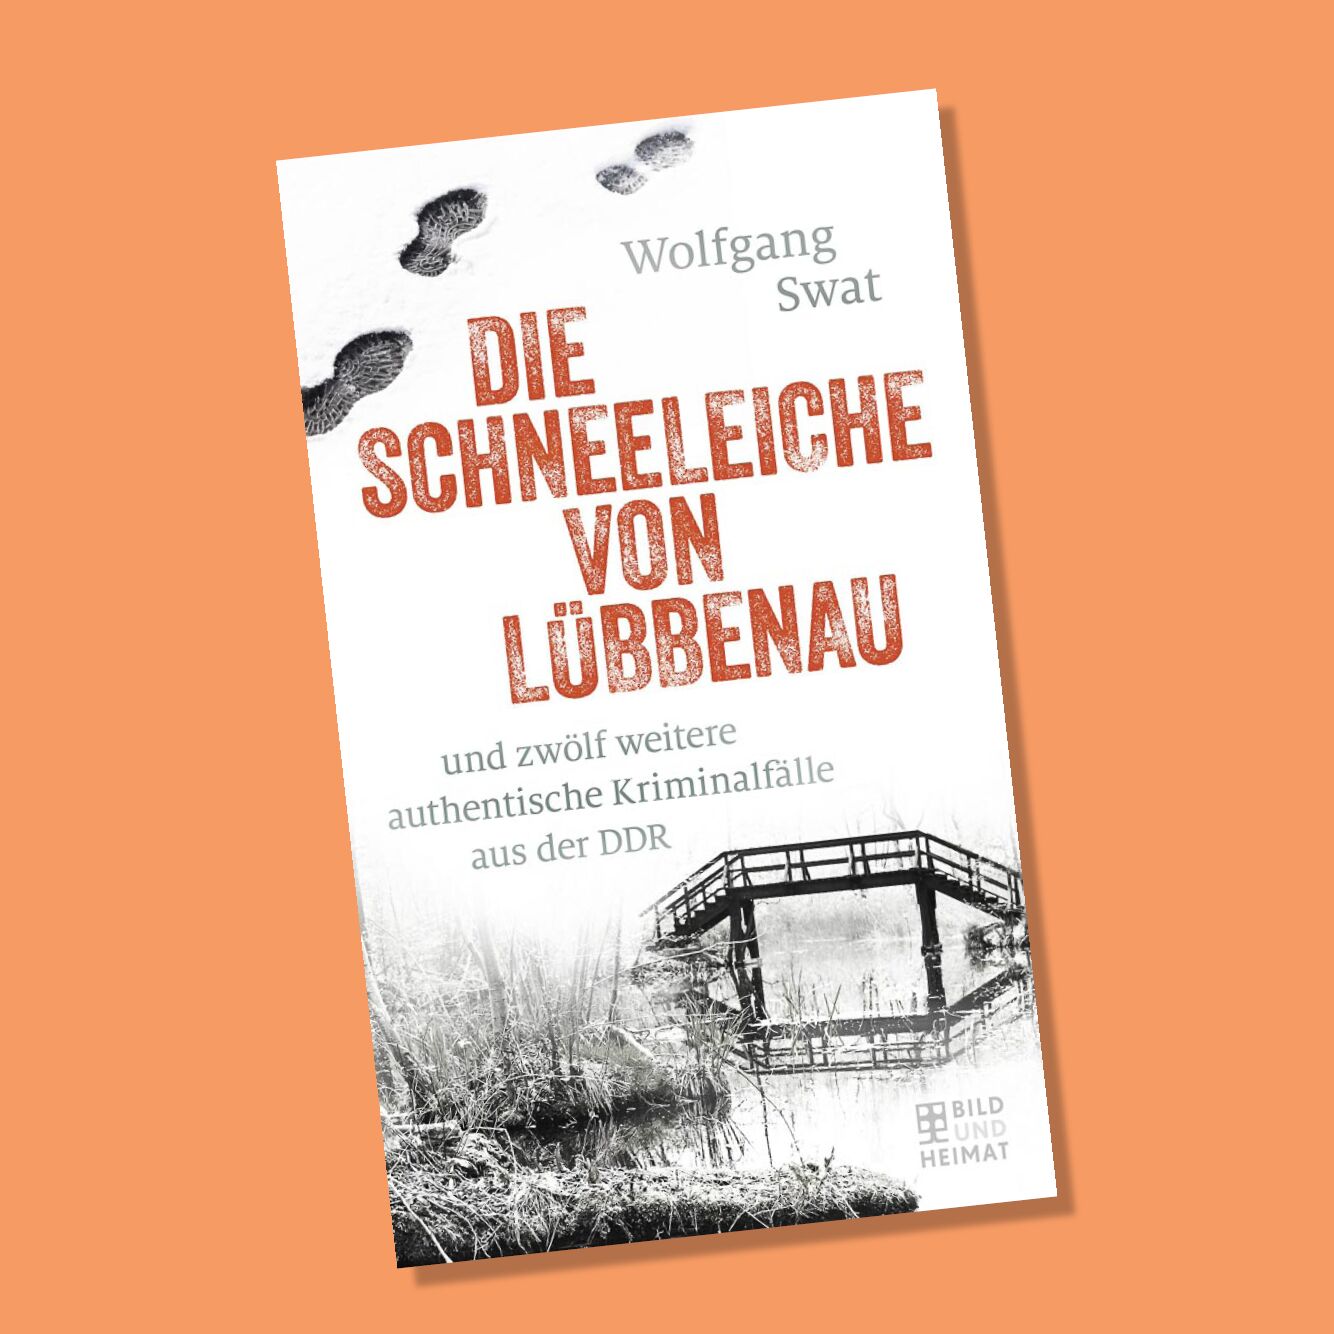 Swat_Schneeleiche Buchtitel, Die Schneeleiche von Lübbenau, Foto: Berliner Buchverlagsgesellschaft mbH, Lizenz: Berliner Buchverlagsgesellschaft mbH